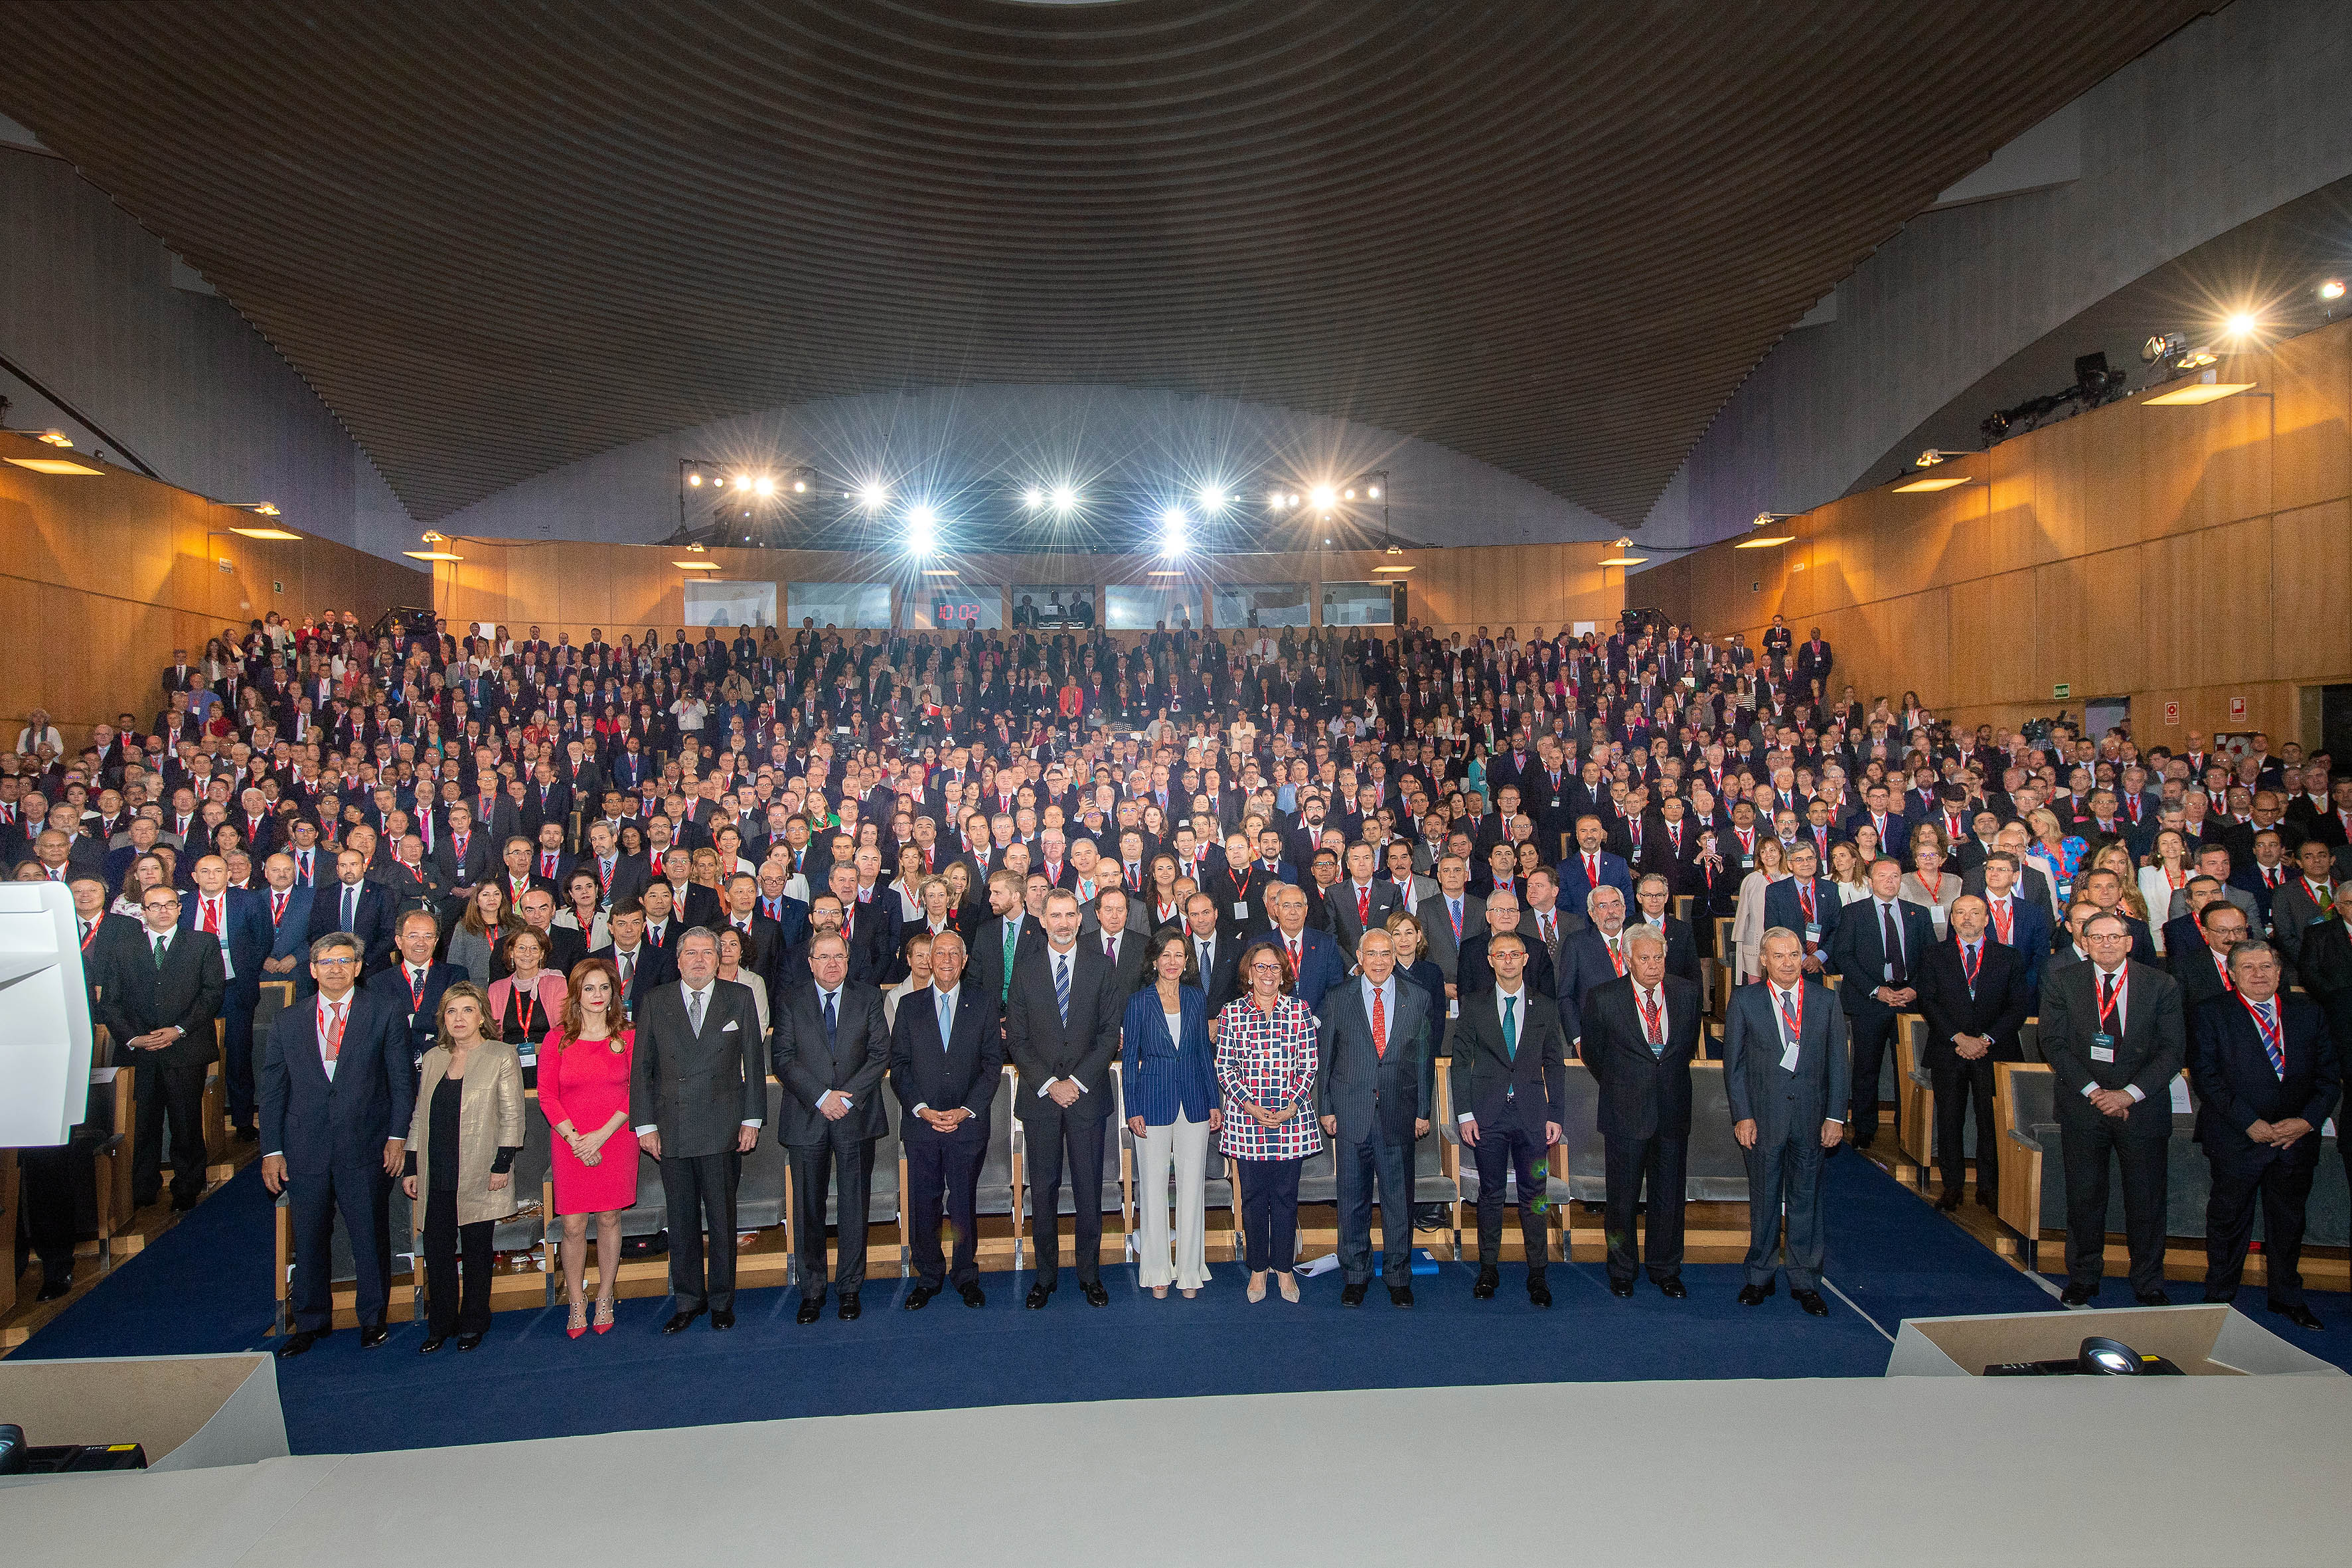 Foto de grupo tomada en el Auditorio del Palacio de Congresos de Salamanca